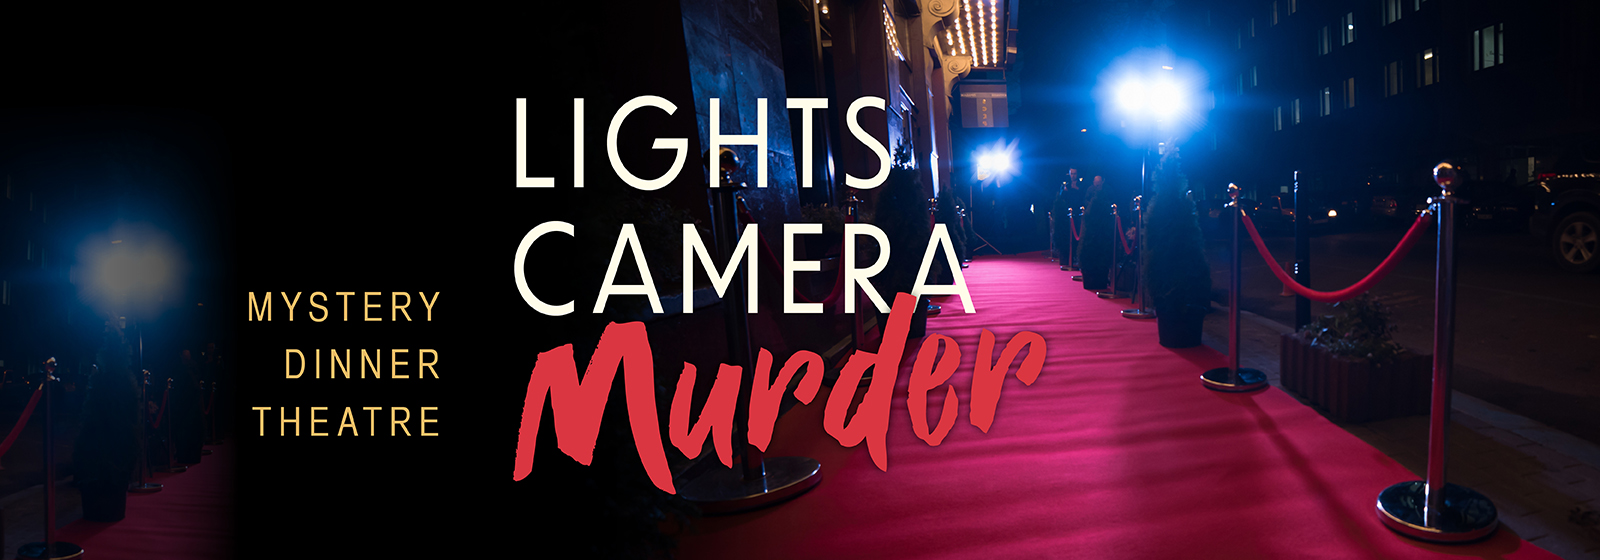 Lights, Camera, Murder